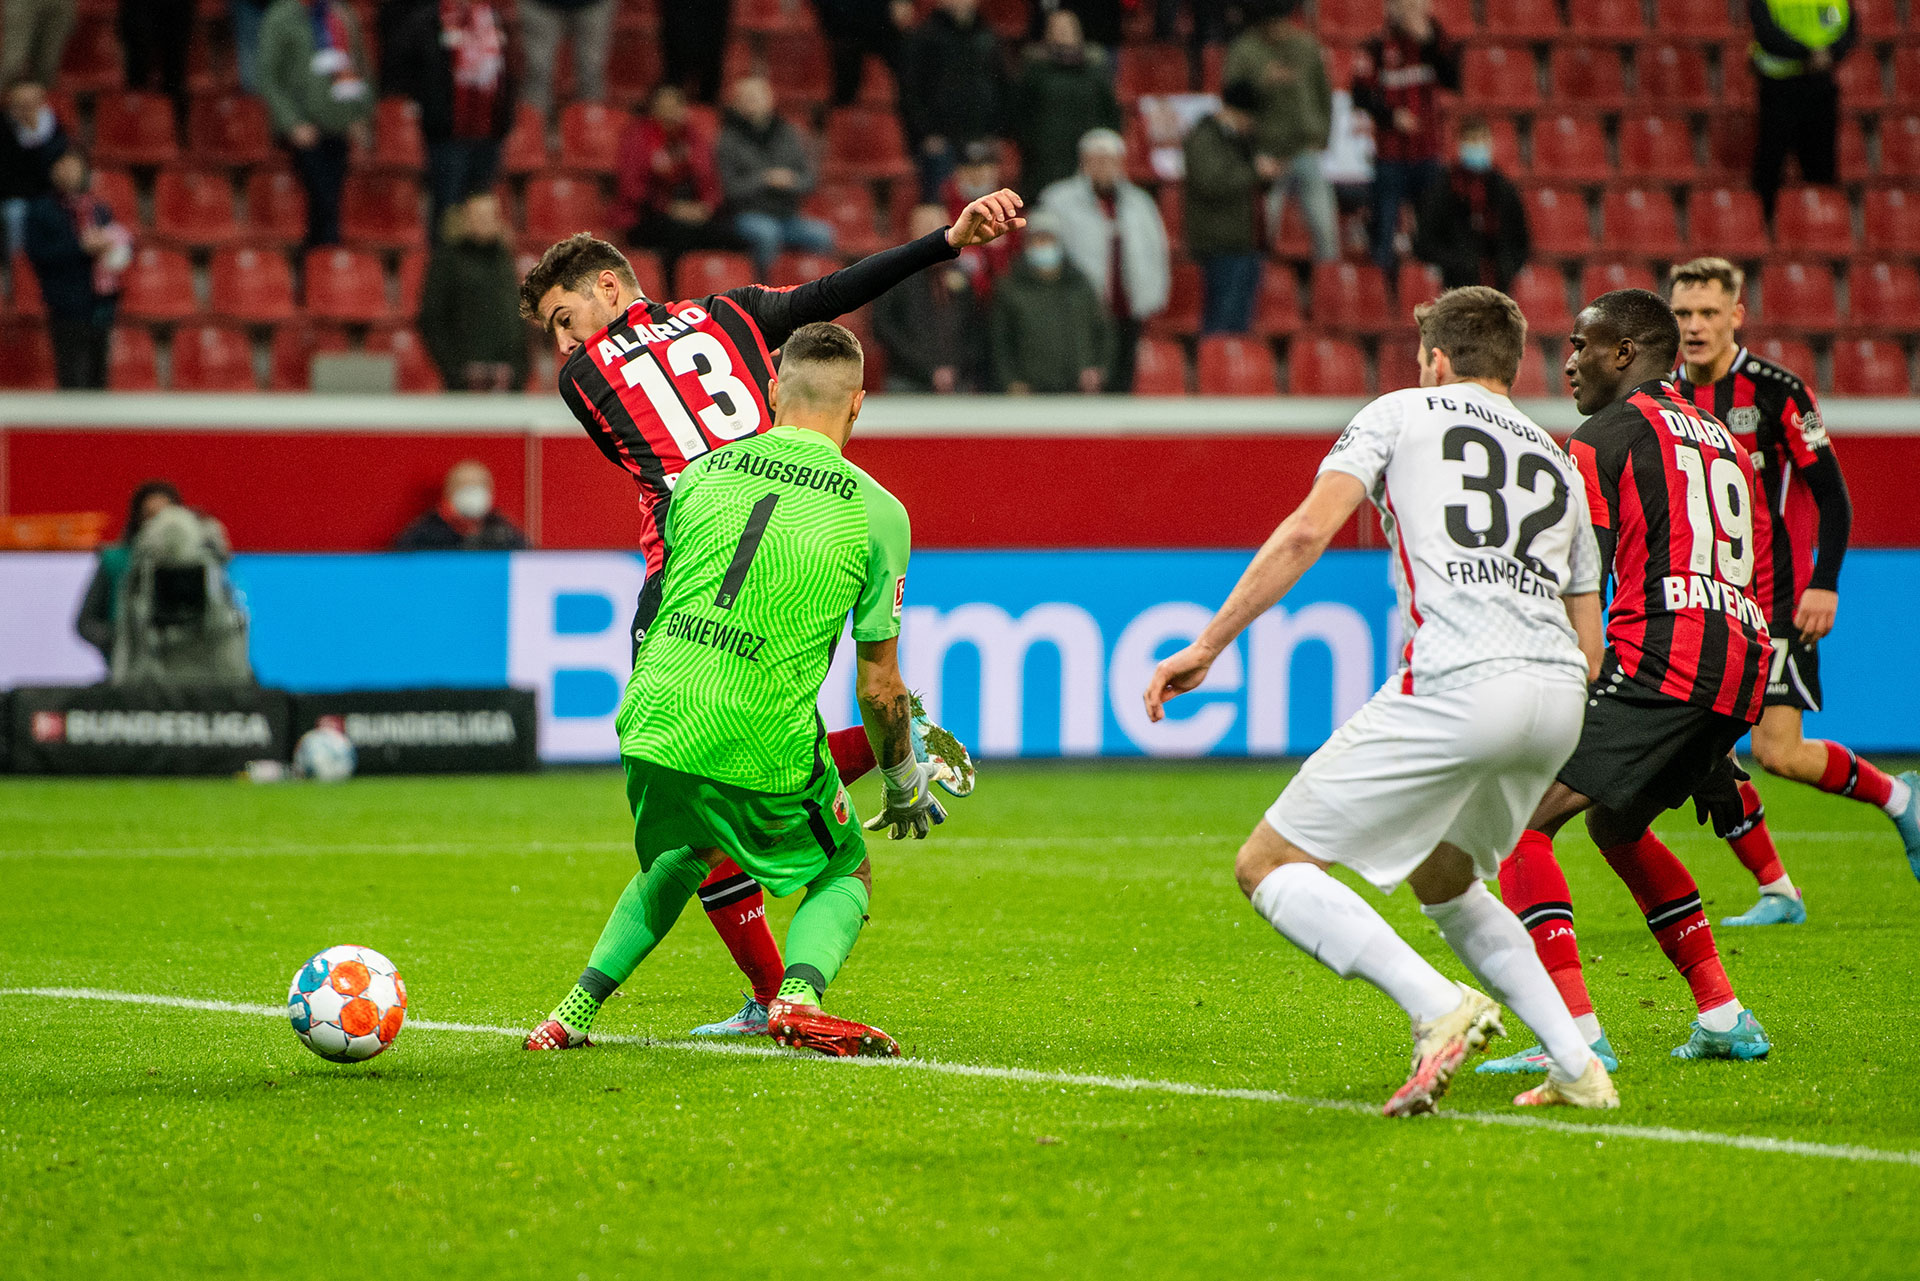 Lucas Alario metió el taco y la pelota pasó entre las piernas del arquero rumbo al fondo de la red (Foto: Bayer Leverkusen)